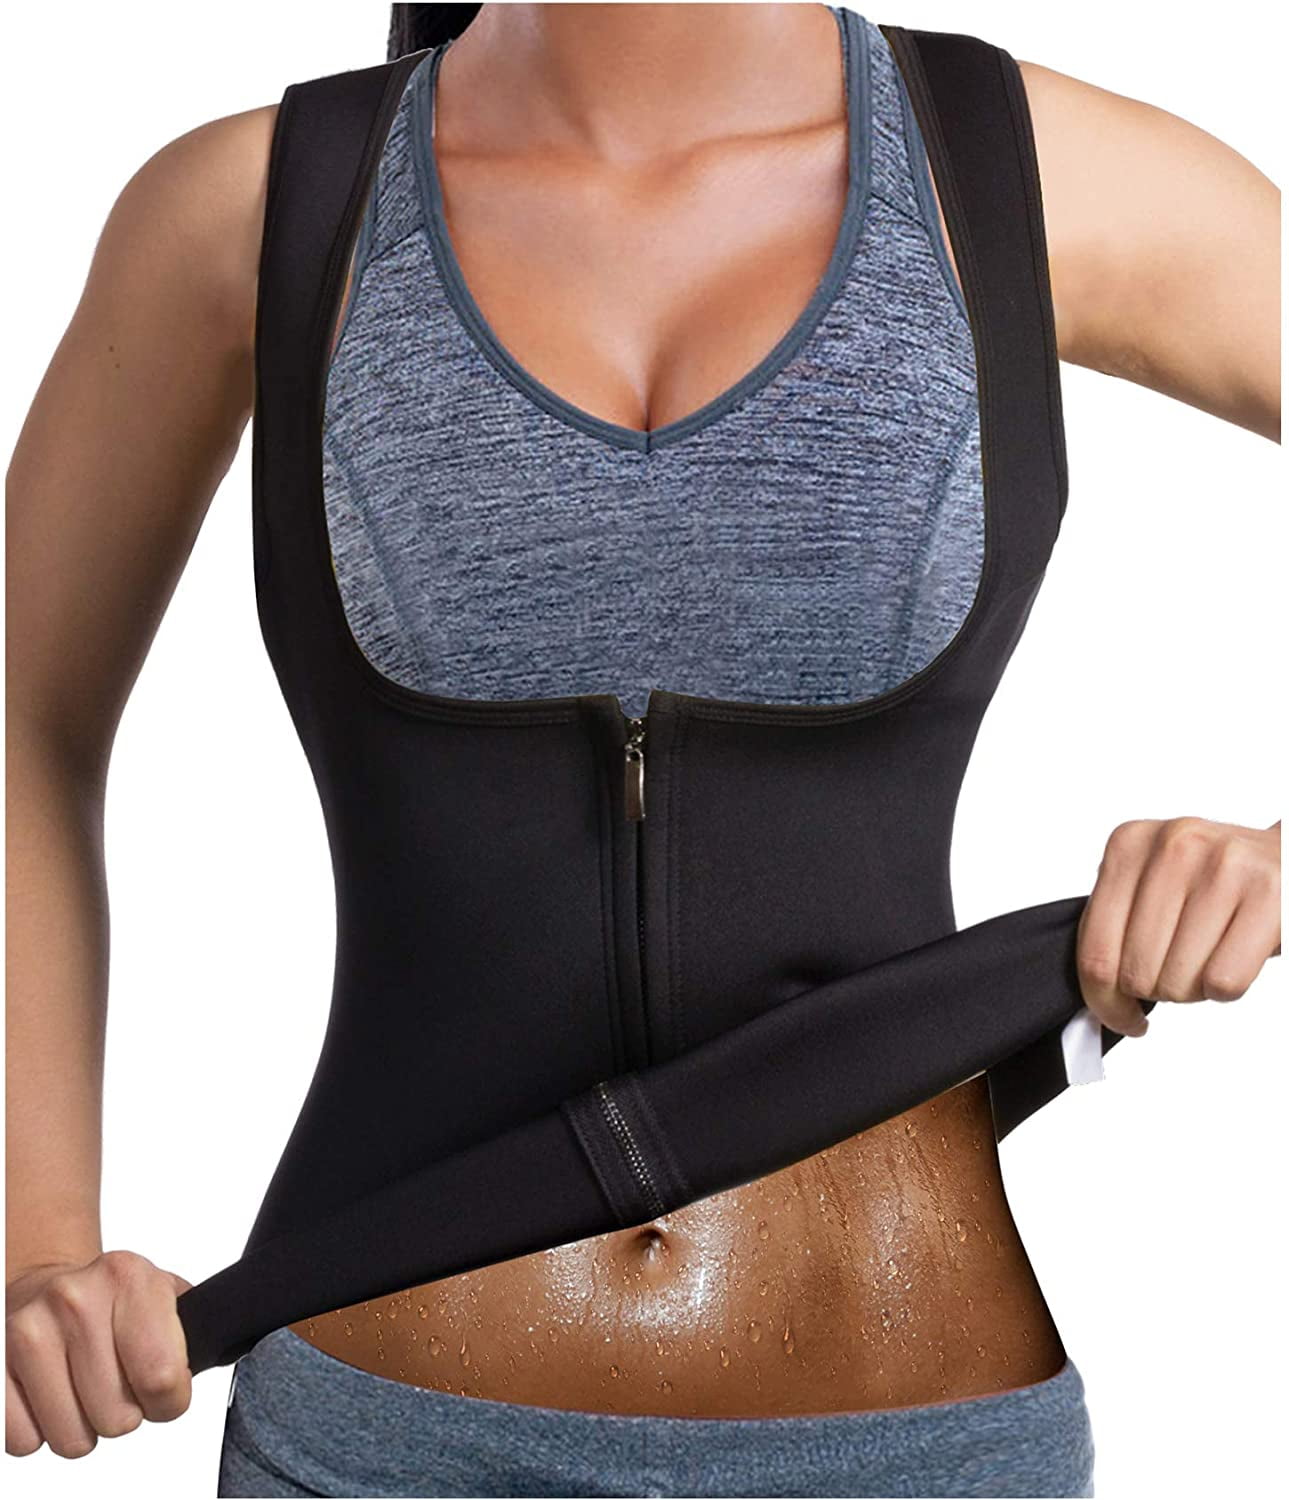 Realdo Womens Waist Trainer Corset Zipper Vest Body Shaper Cincher Tank Top Fitness Sport Workout Slimming